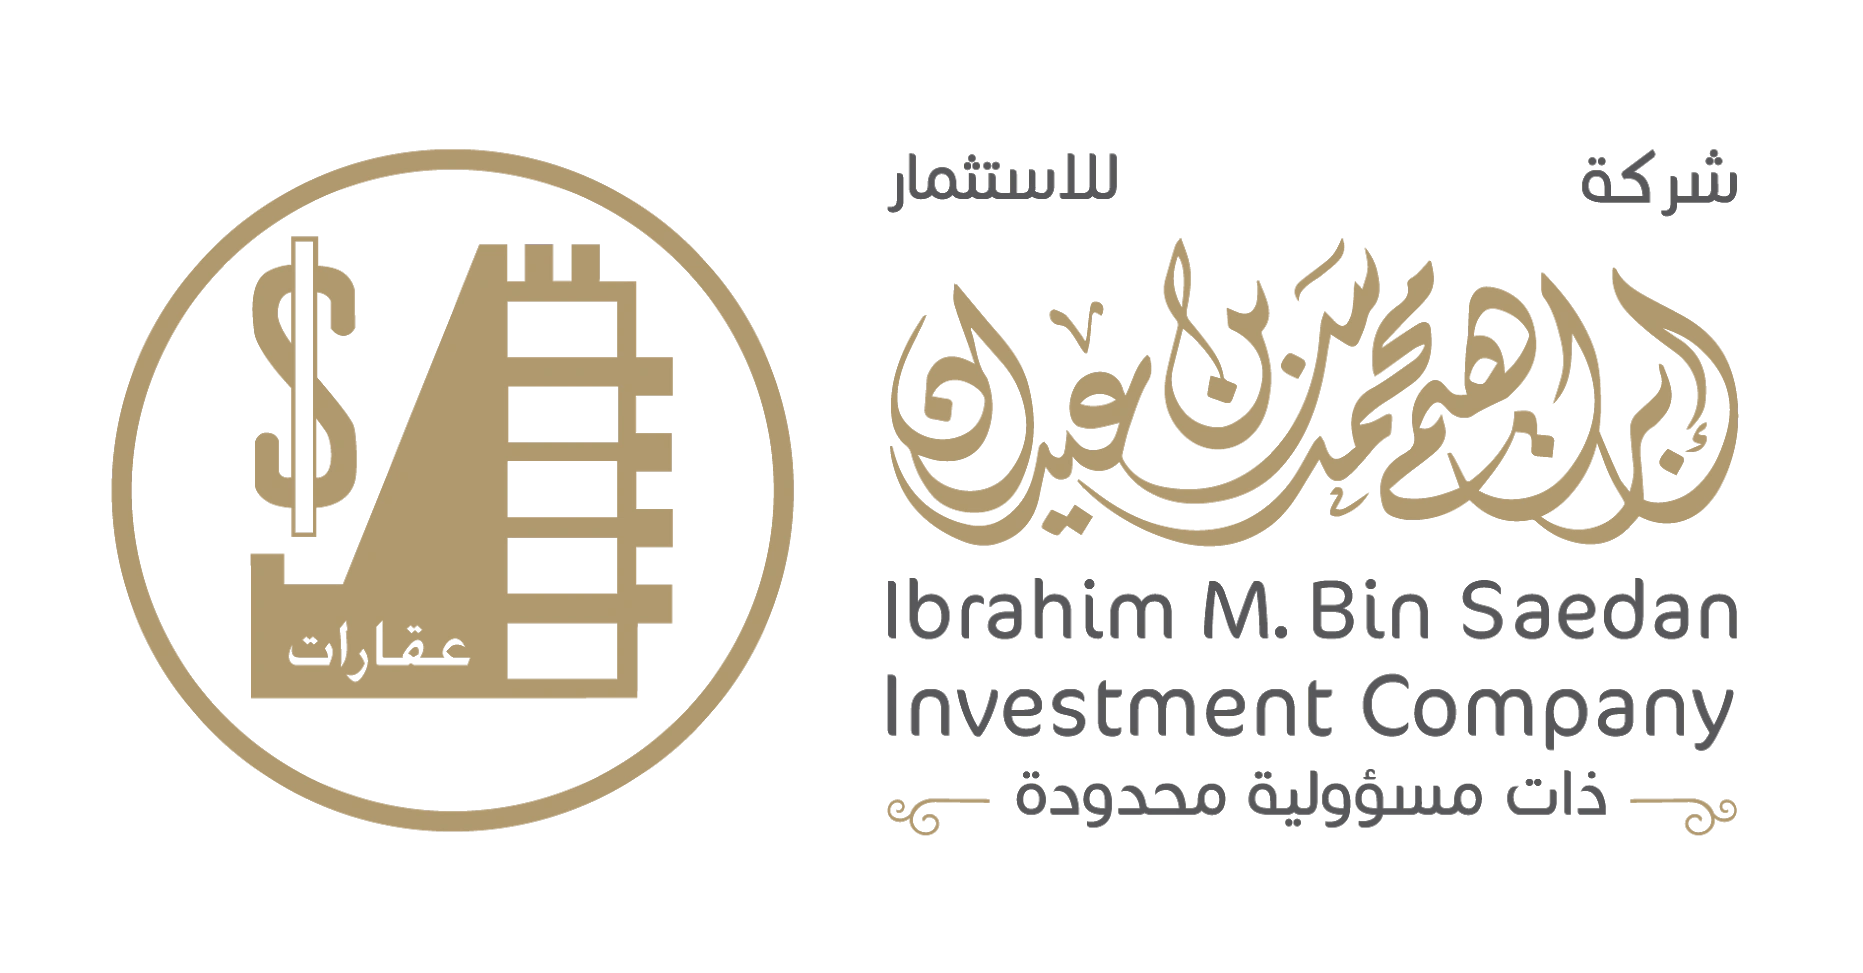 Ibrahim Mohammed Bin Saedan Holding Co.